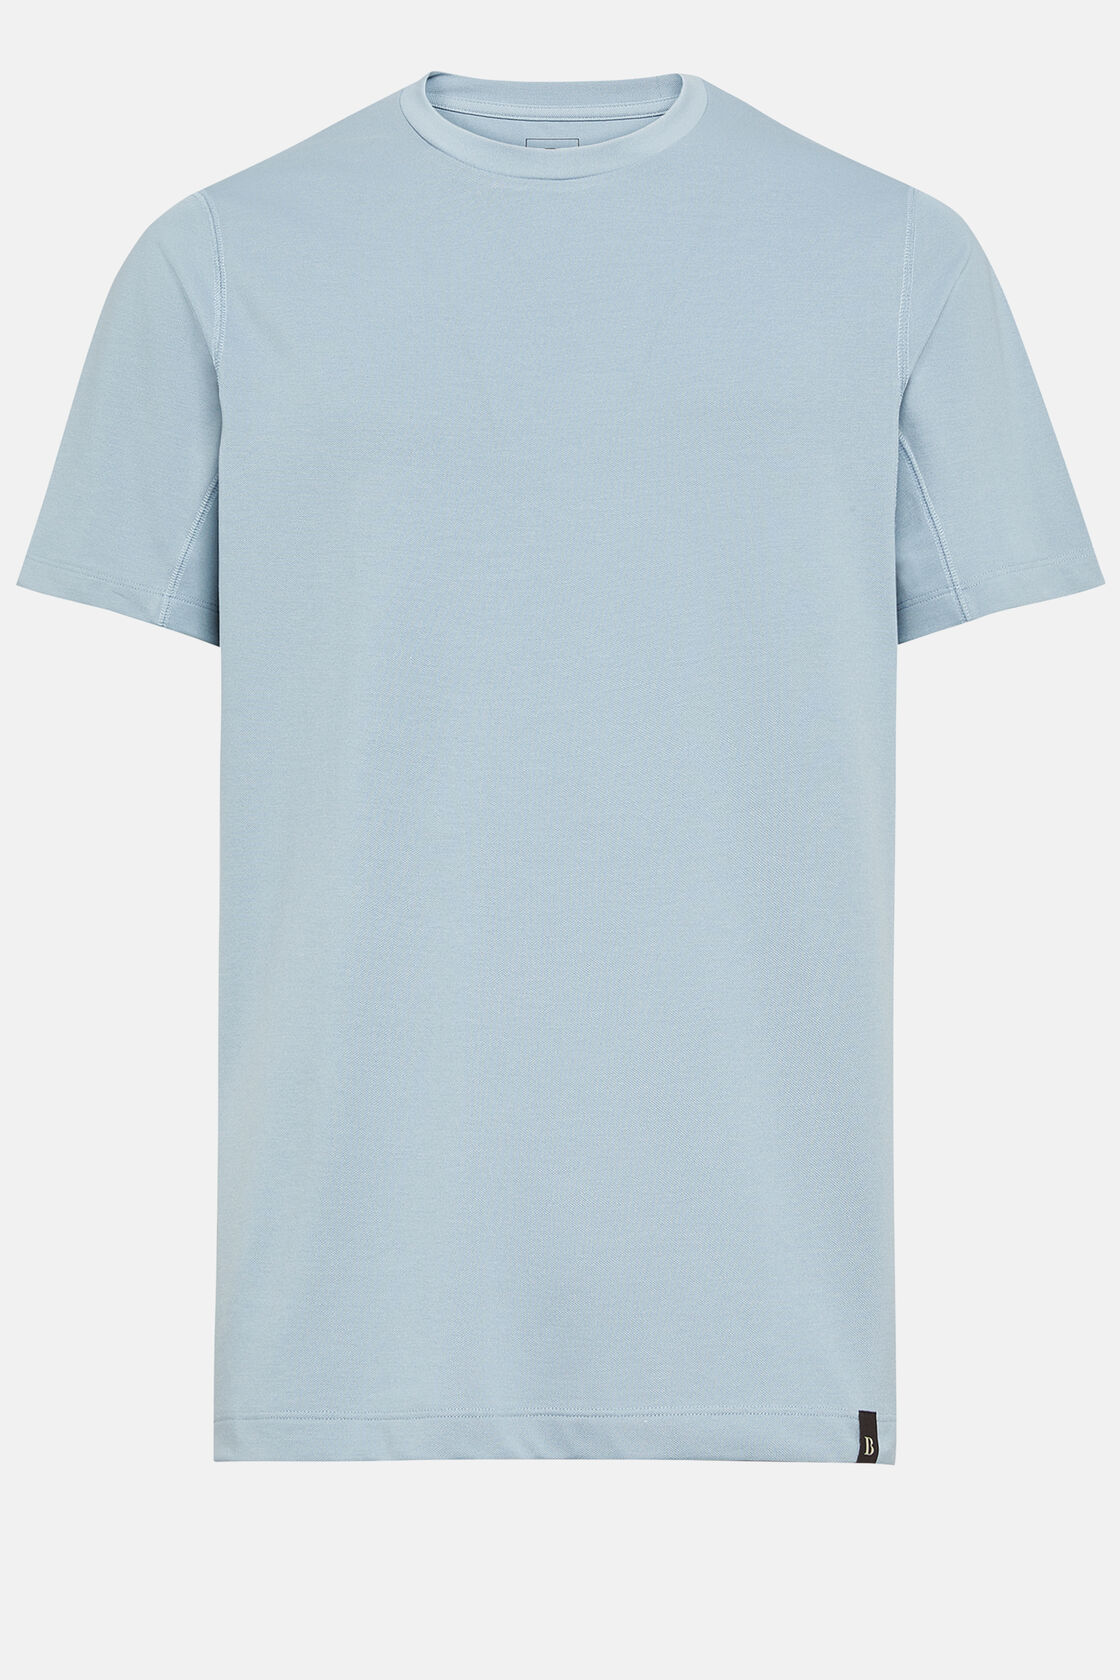 Camiseta de piqué de alto rendimiento, Azul claro, hi-res